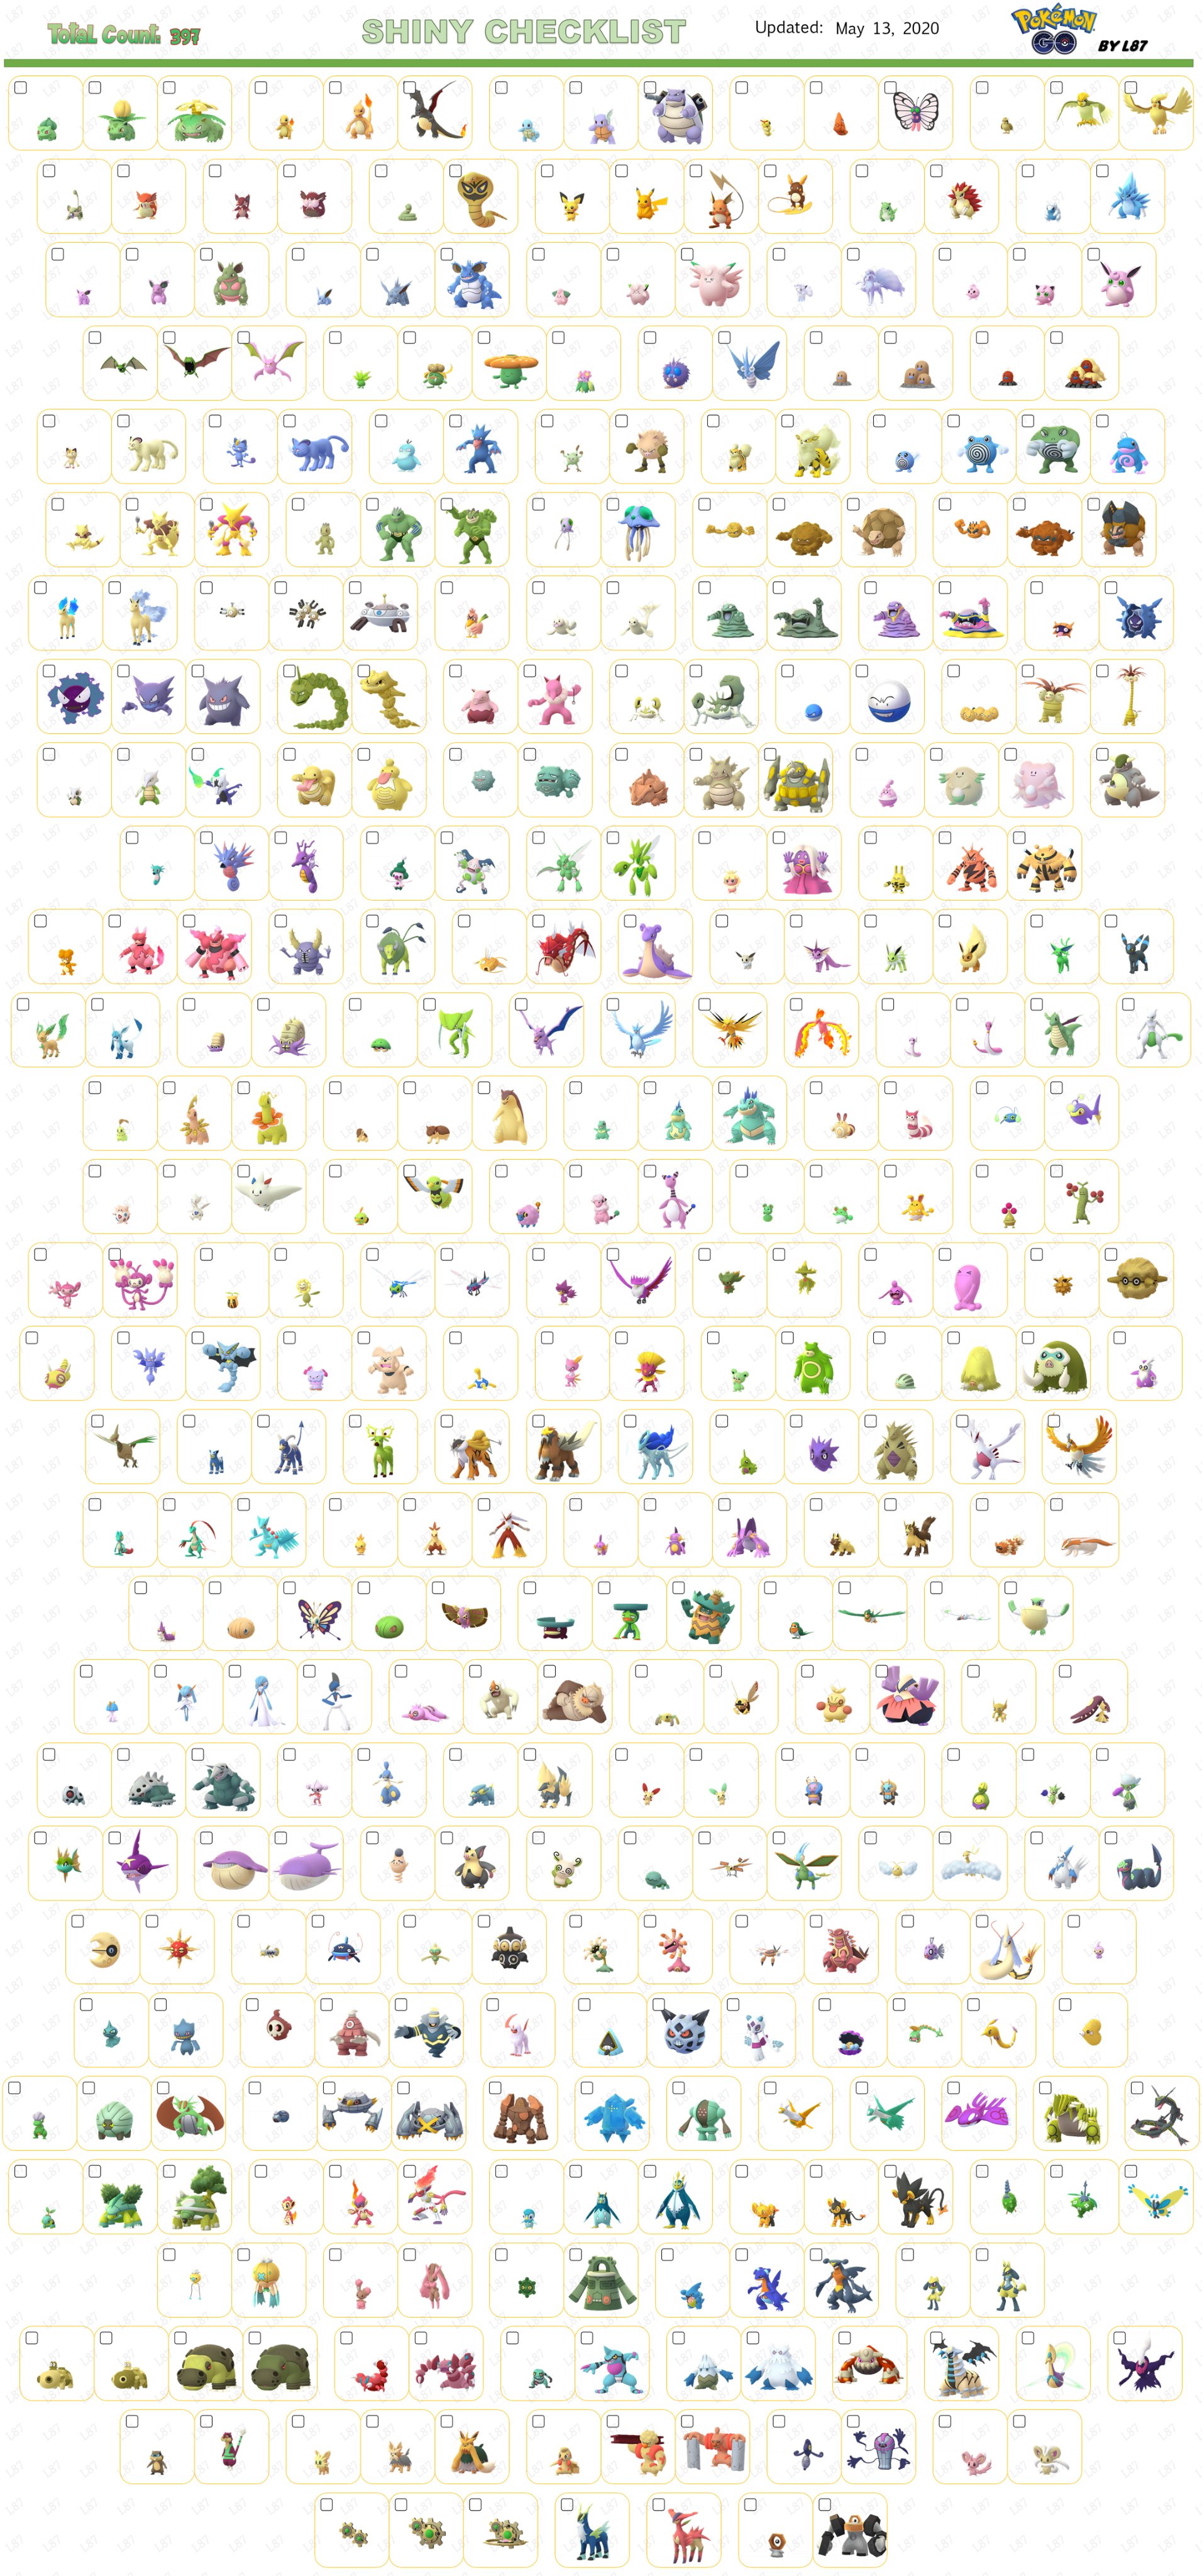 Pokémon Shiny Checklist  Pokemon, Shiny pokemon, Pokemon pokedex